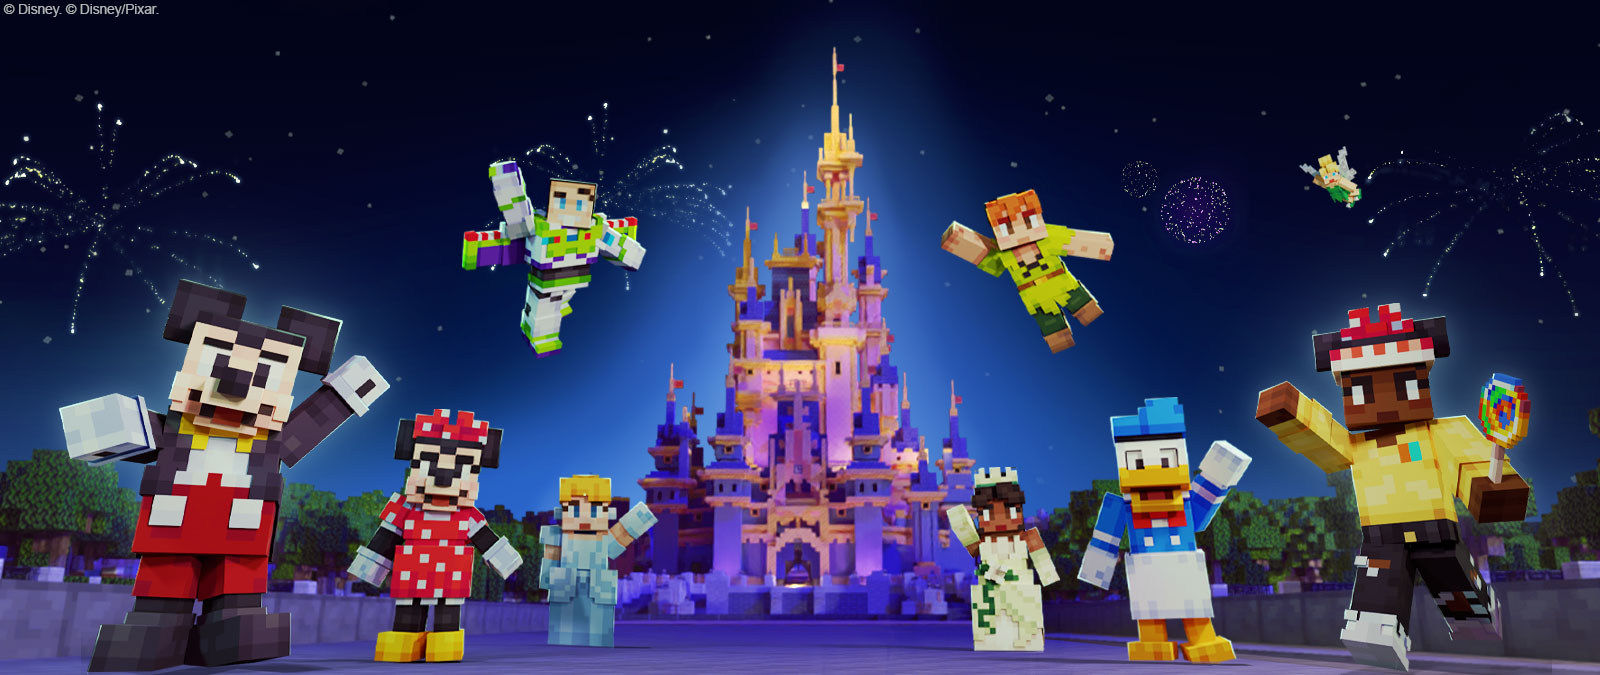 Rato Mickey, Minnie, Buzz Lightyear, Cinderela, Peter Pan, Tiana, Pato Donald, Sininho e outras personagens em estilo Minecraft em frente ao castelo da Disney